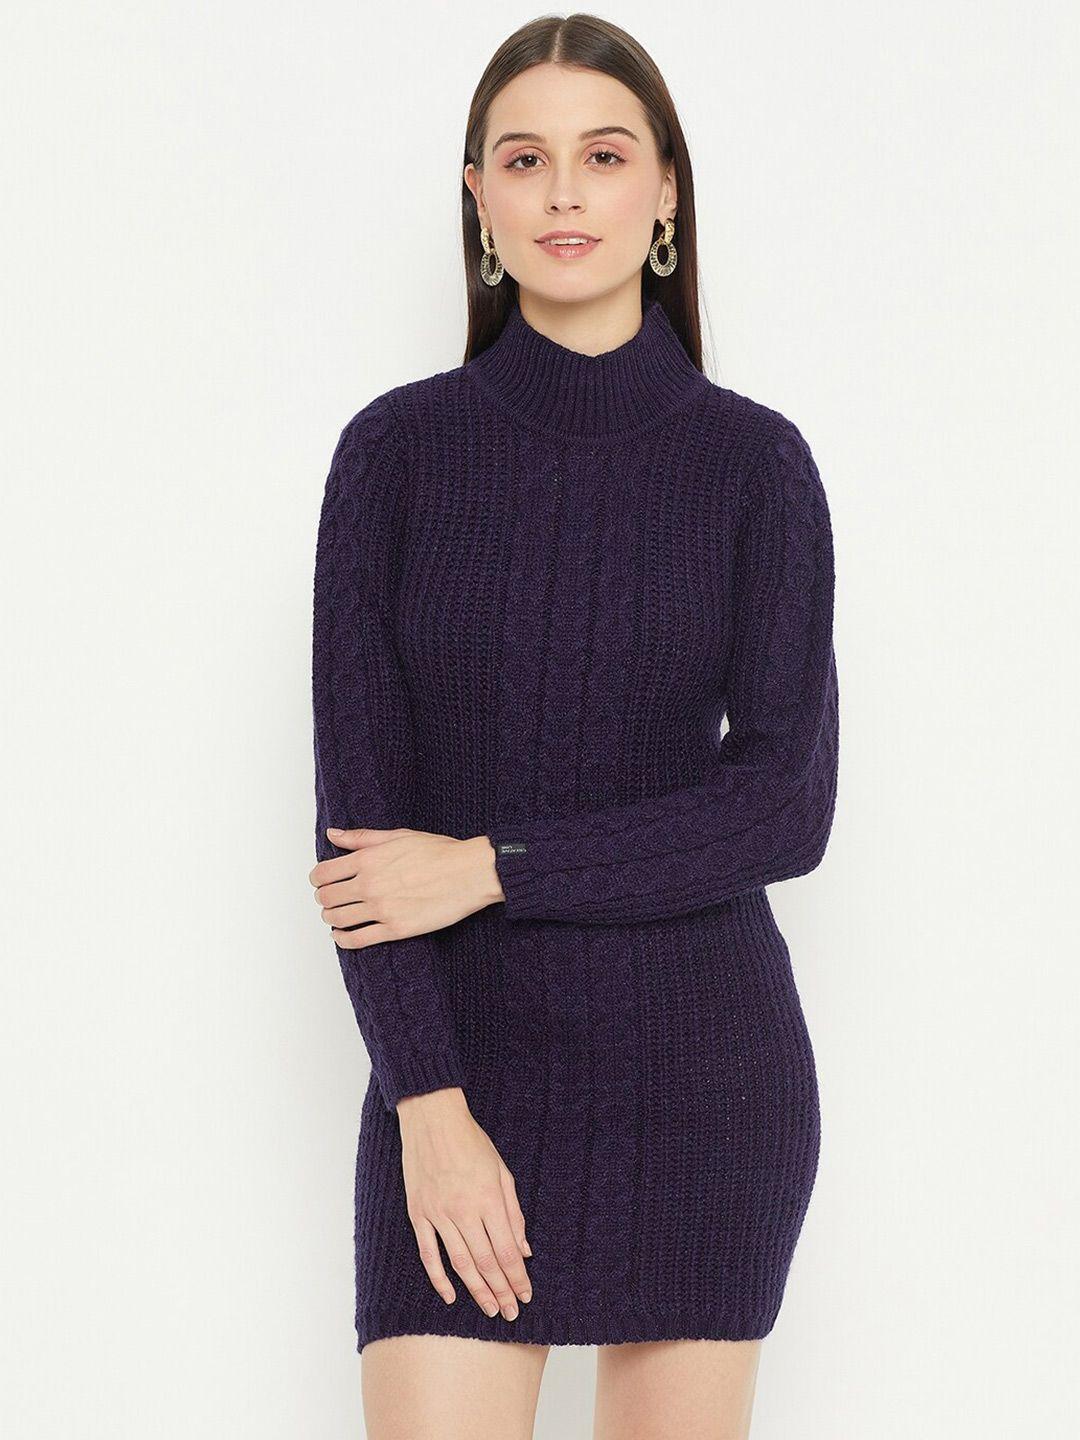 creative line self design woollen jumper dress